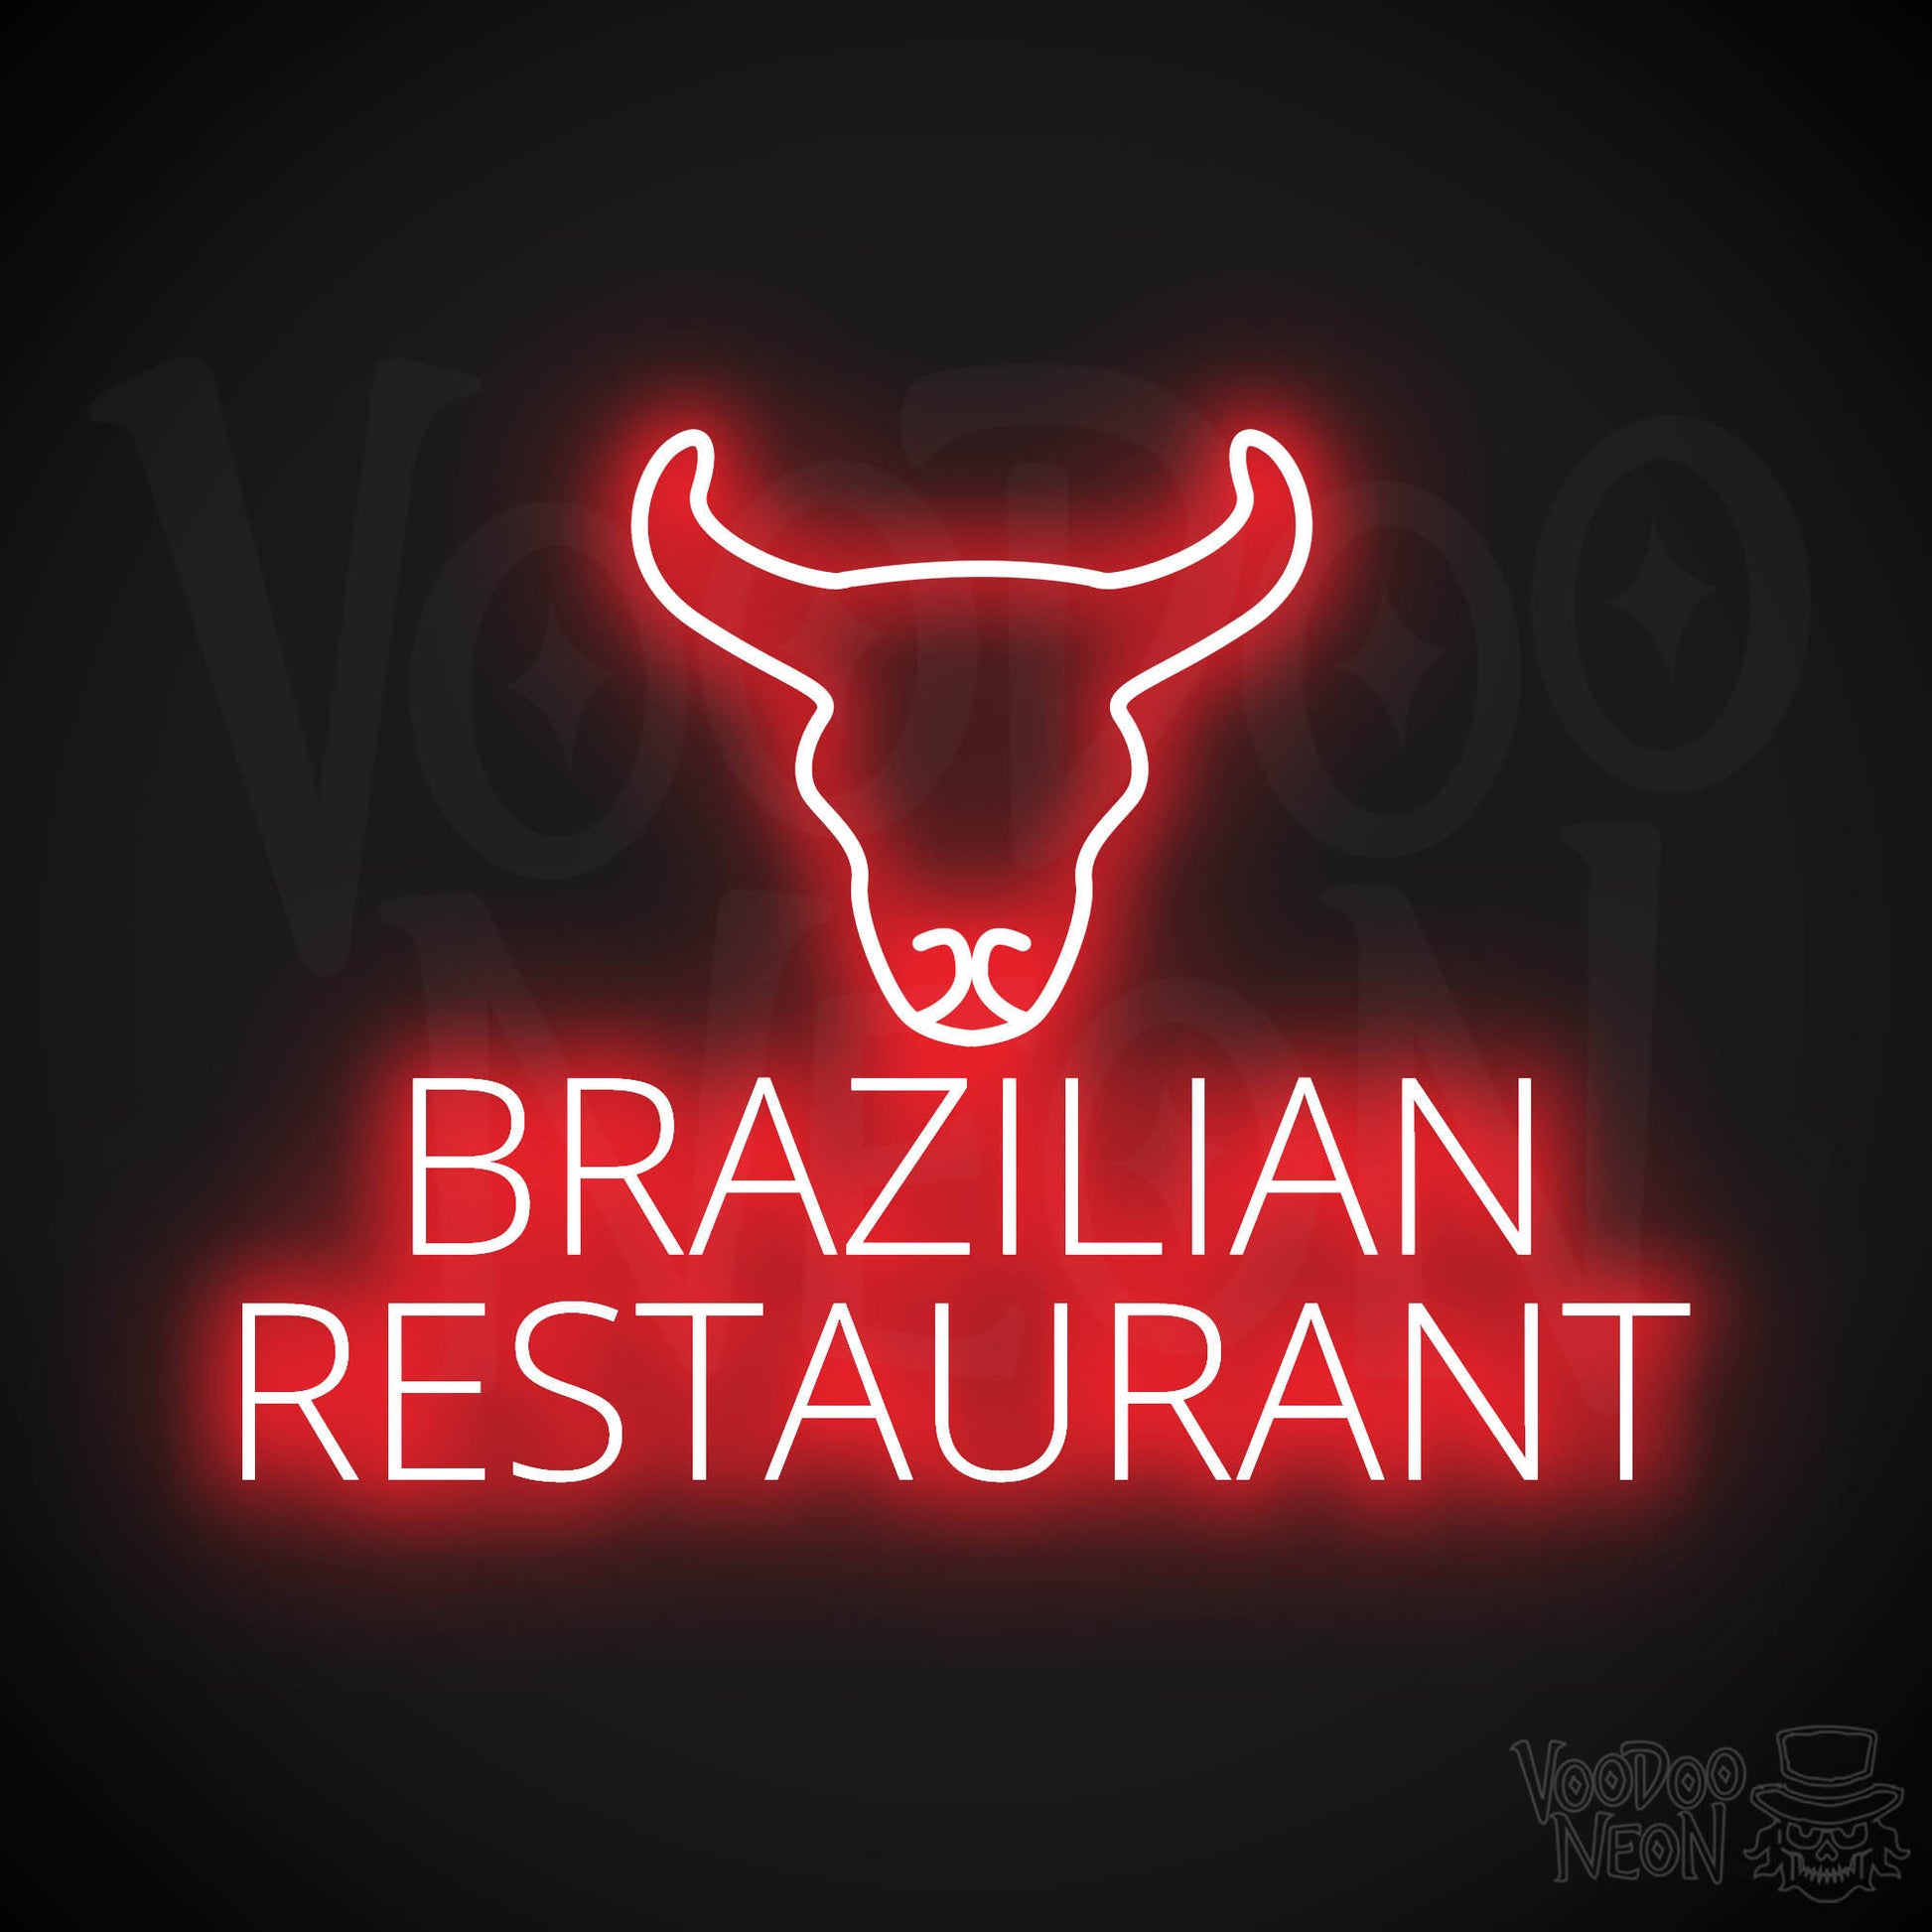 Brazilian Restaurant LED Neon - Red